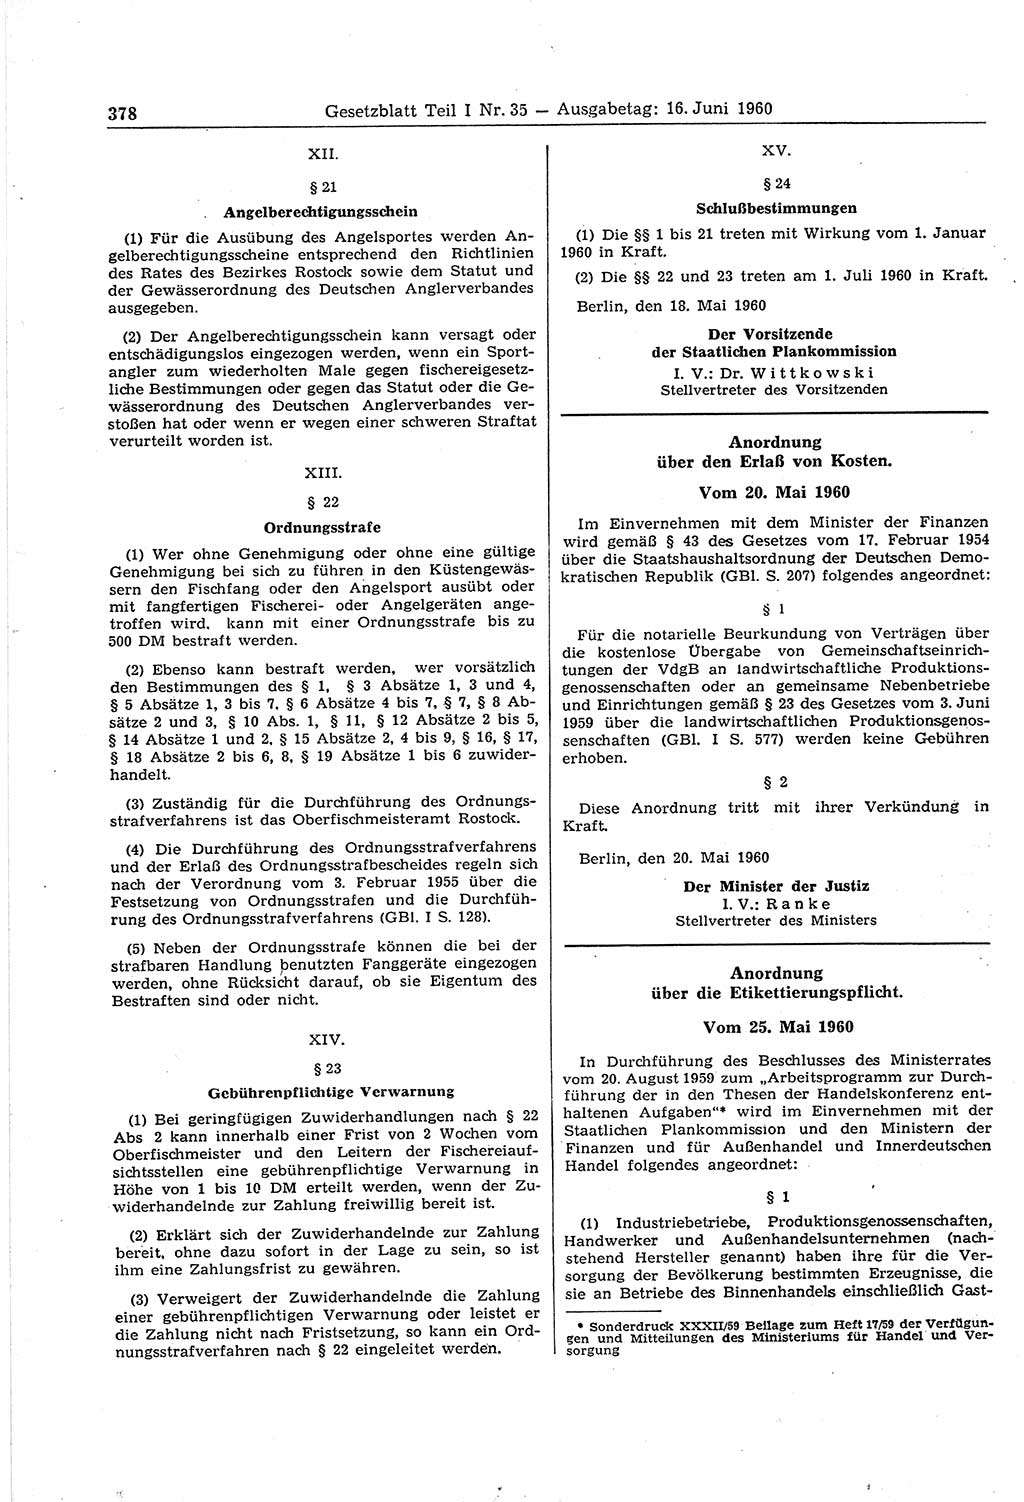 Gesetzblatt (GBl.) der Deutschen Demokratischen Republik (DDR) Teil Ⅰ 1960, Seite 378 (GBl. DDR Ⅰ 1960, S. 378)